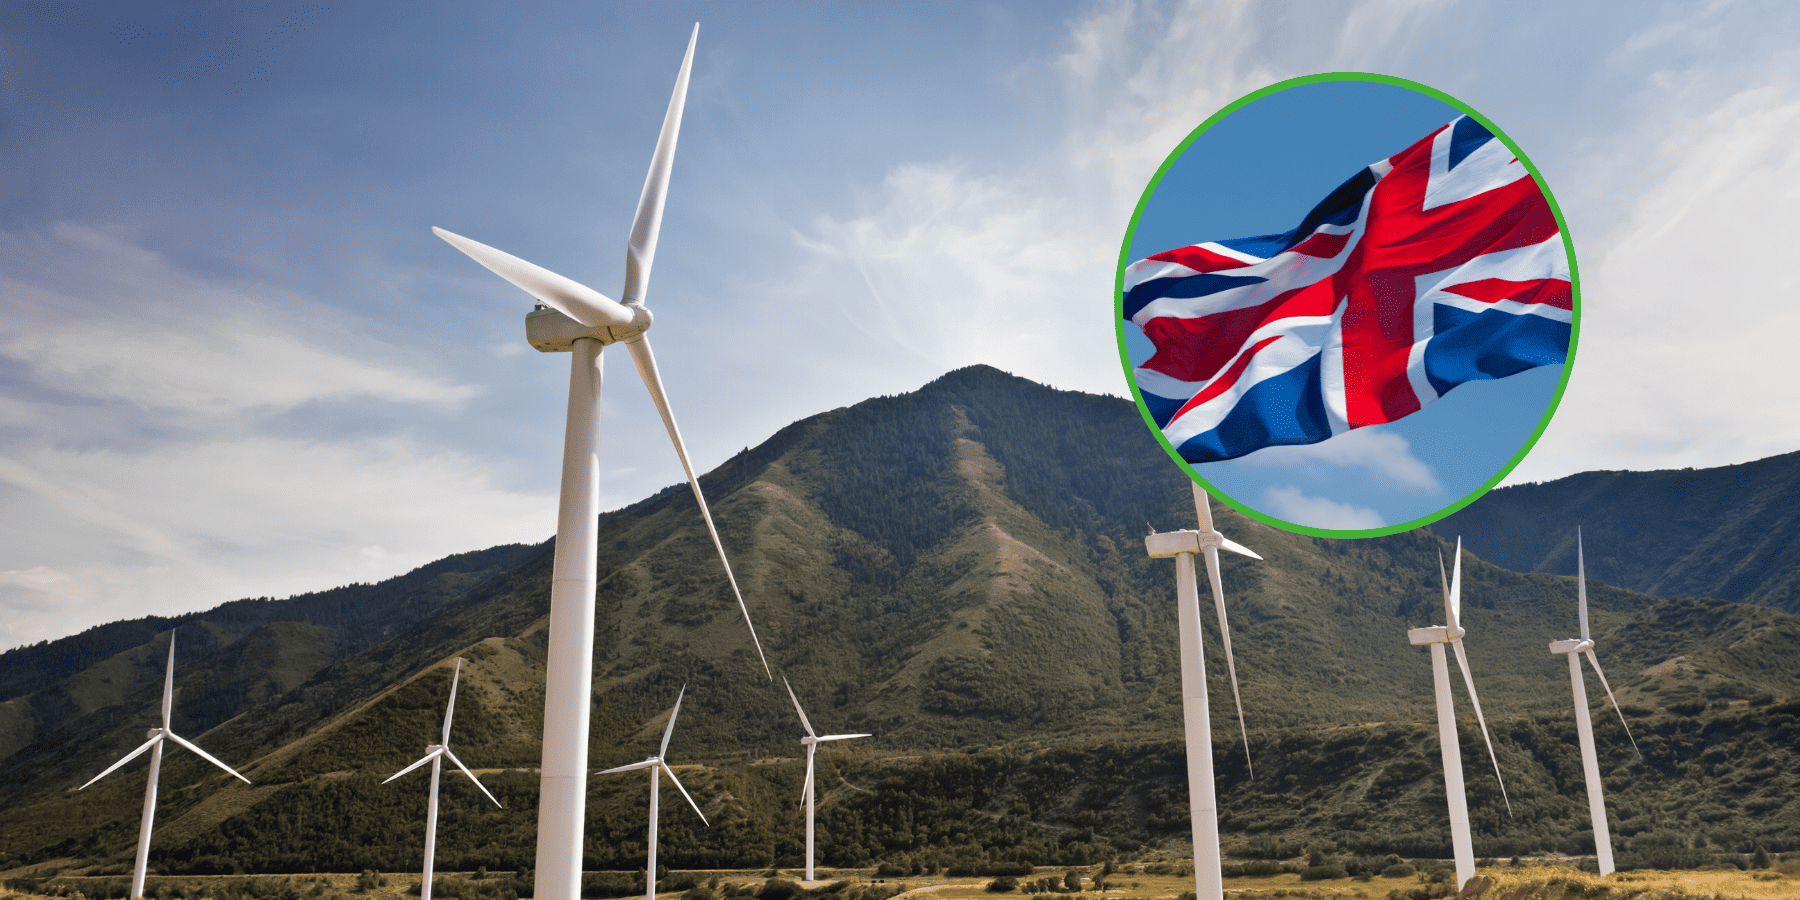 Operatorzy farm wiatrowych w Wielkiej Brytanii zawyżali prognozy dziennej produkcji